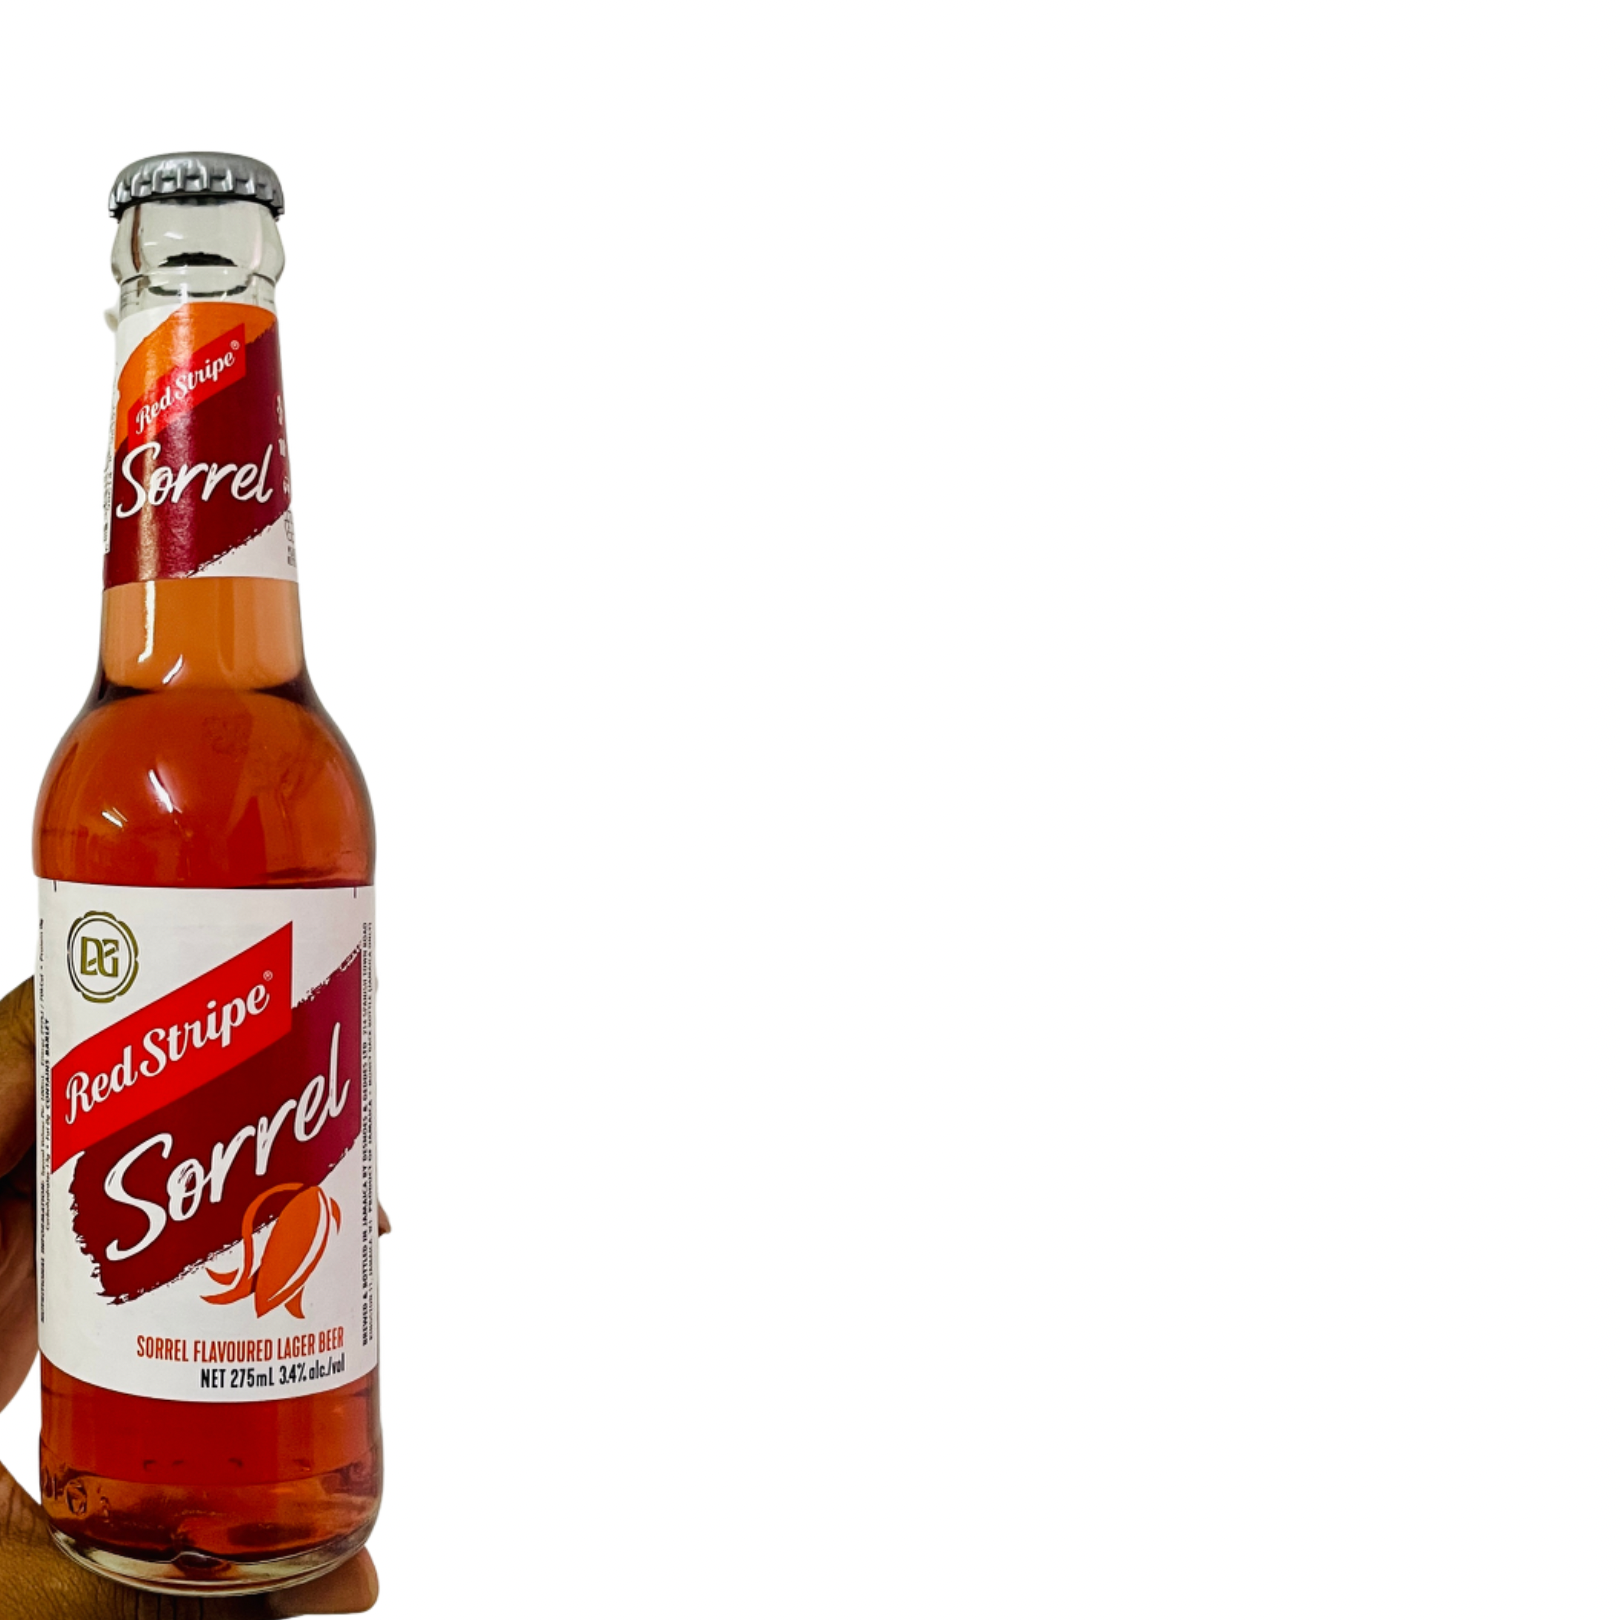 Red Stripe Sorrel Beer